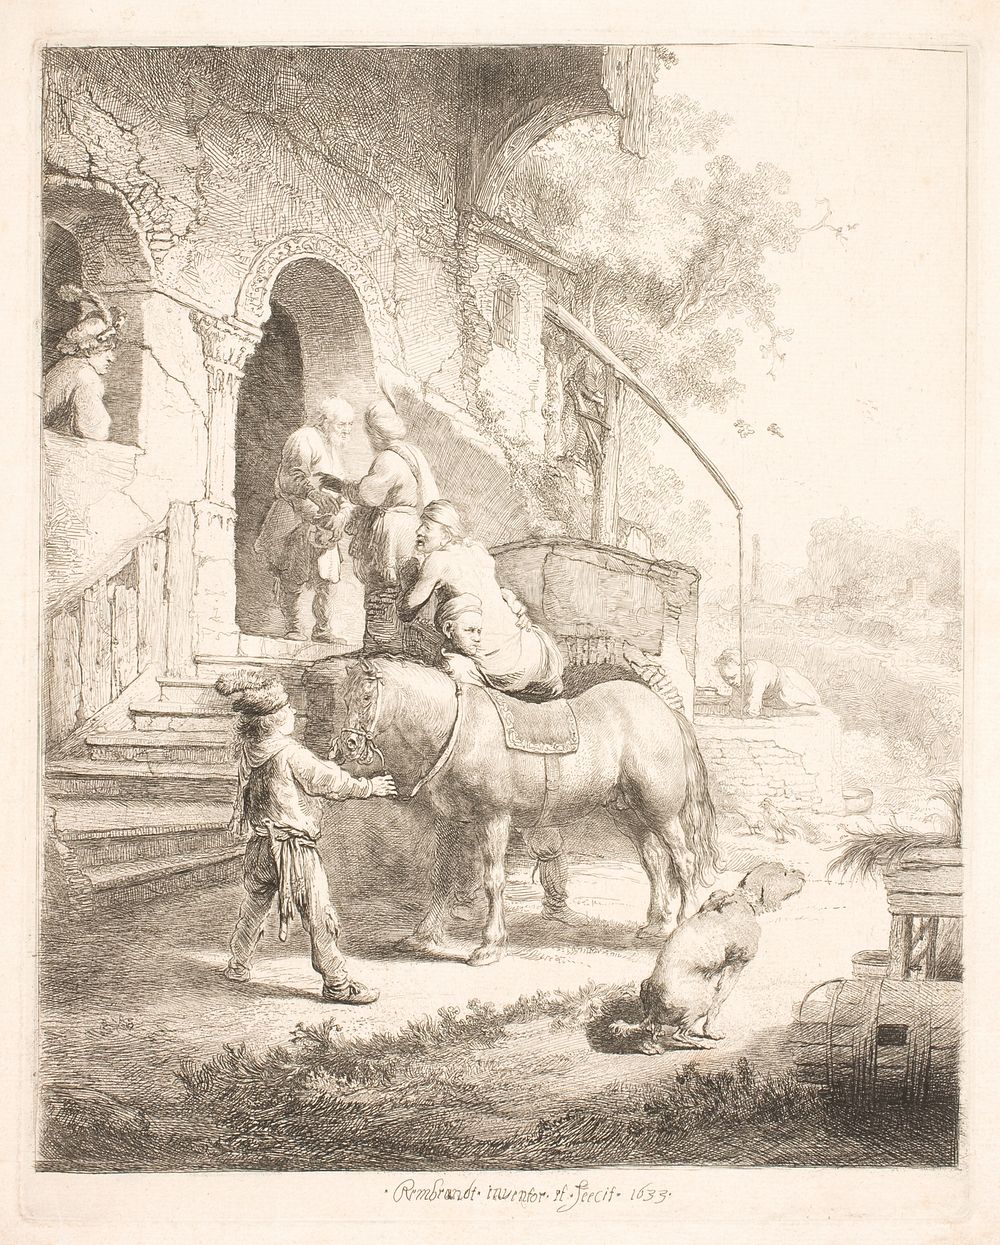 The good Samaritan by Rembrandt van Rijn